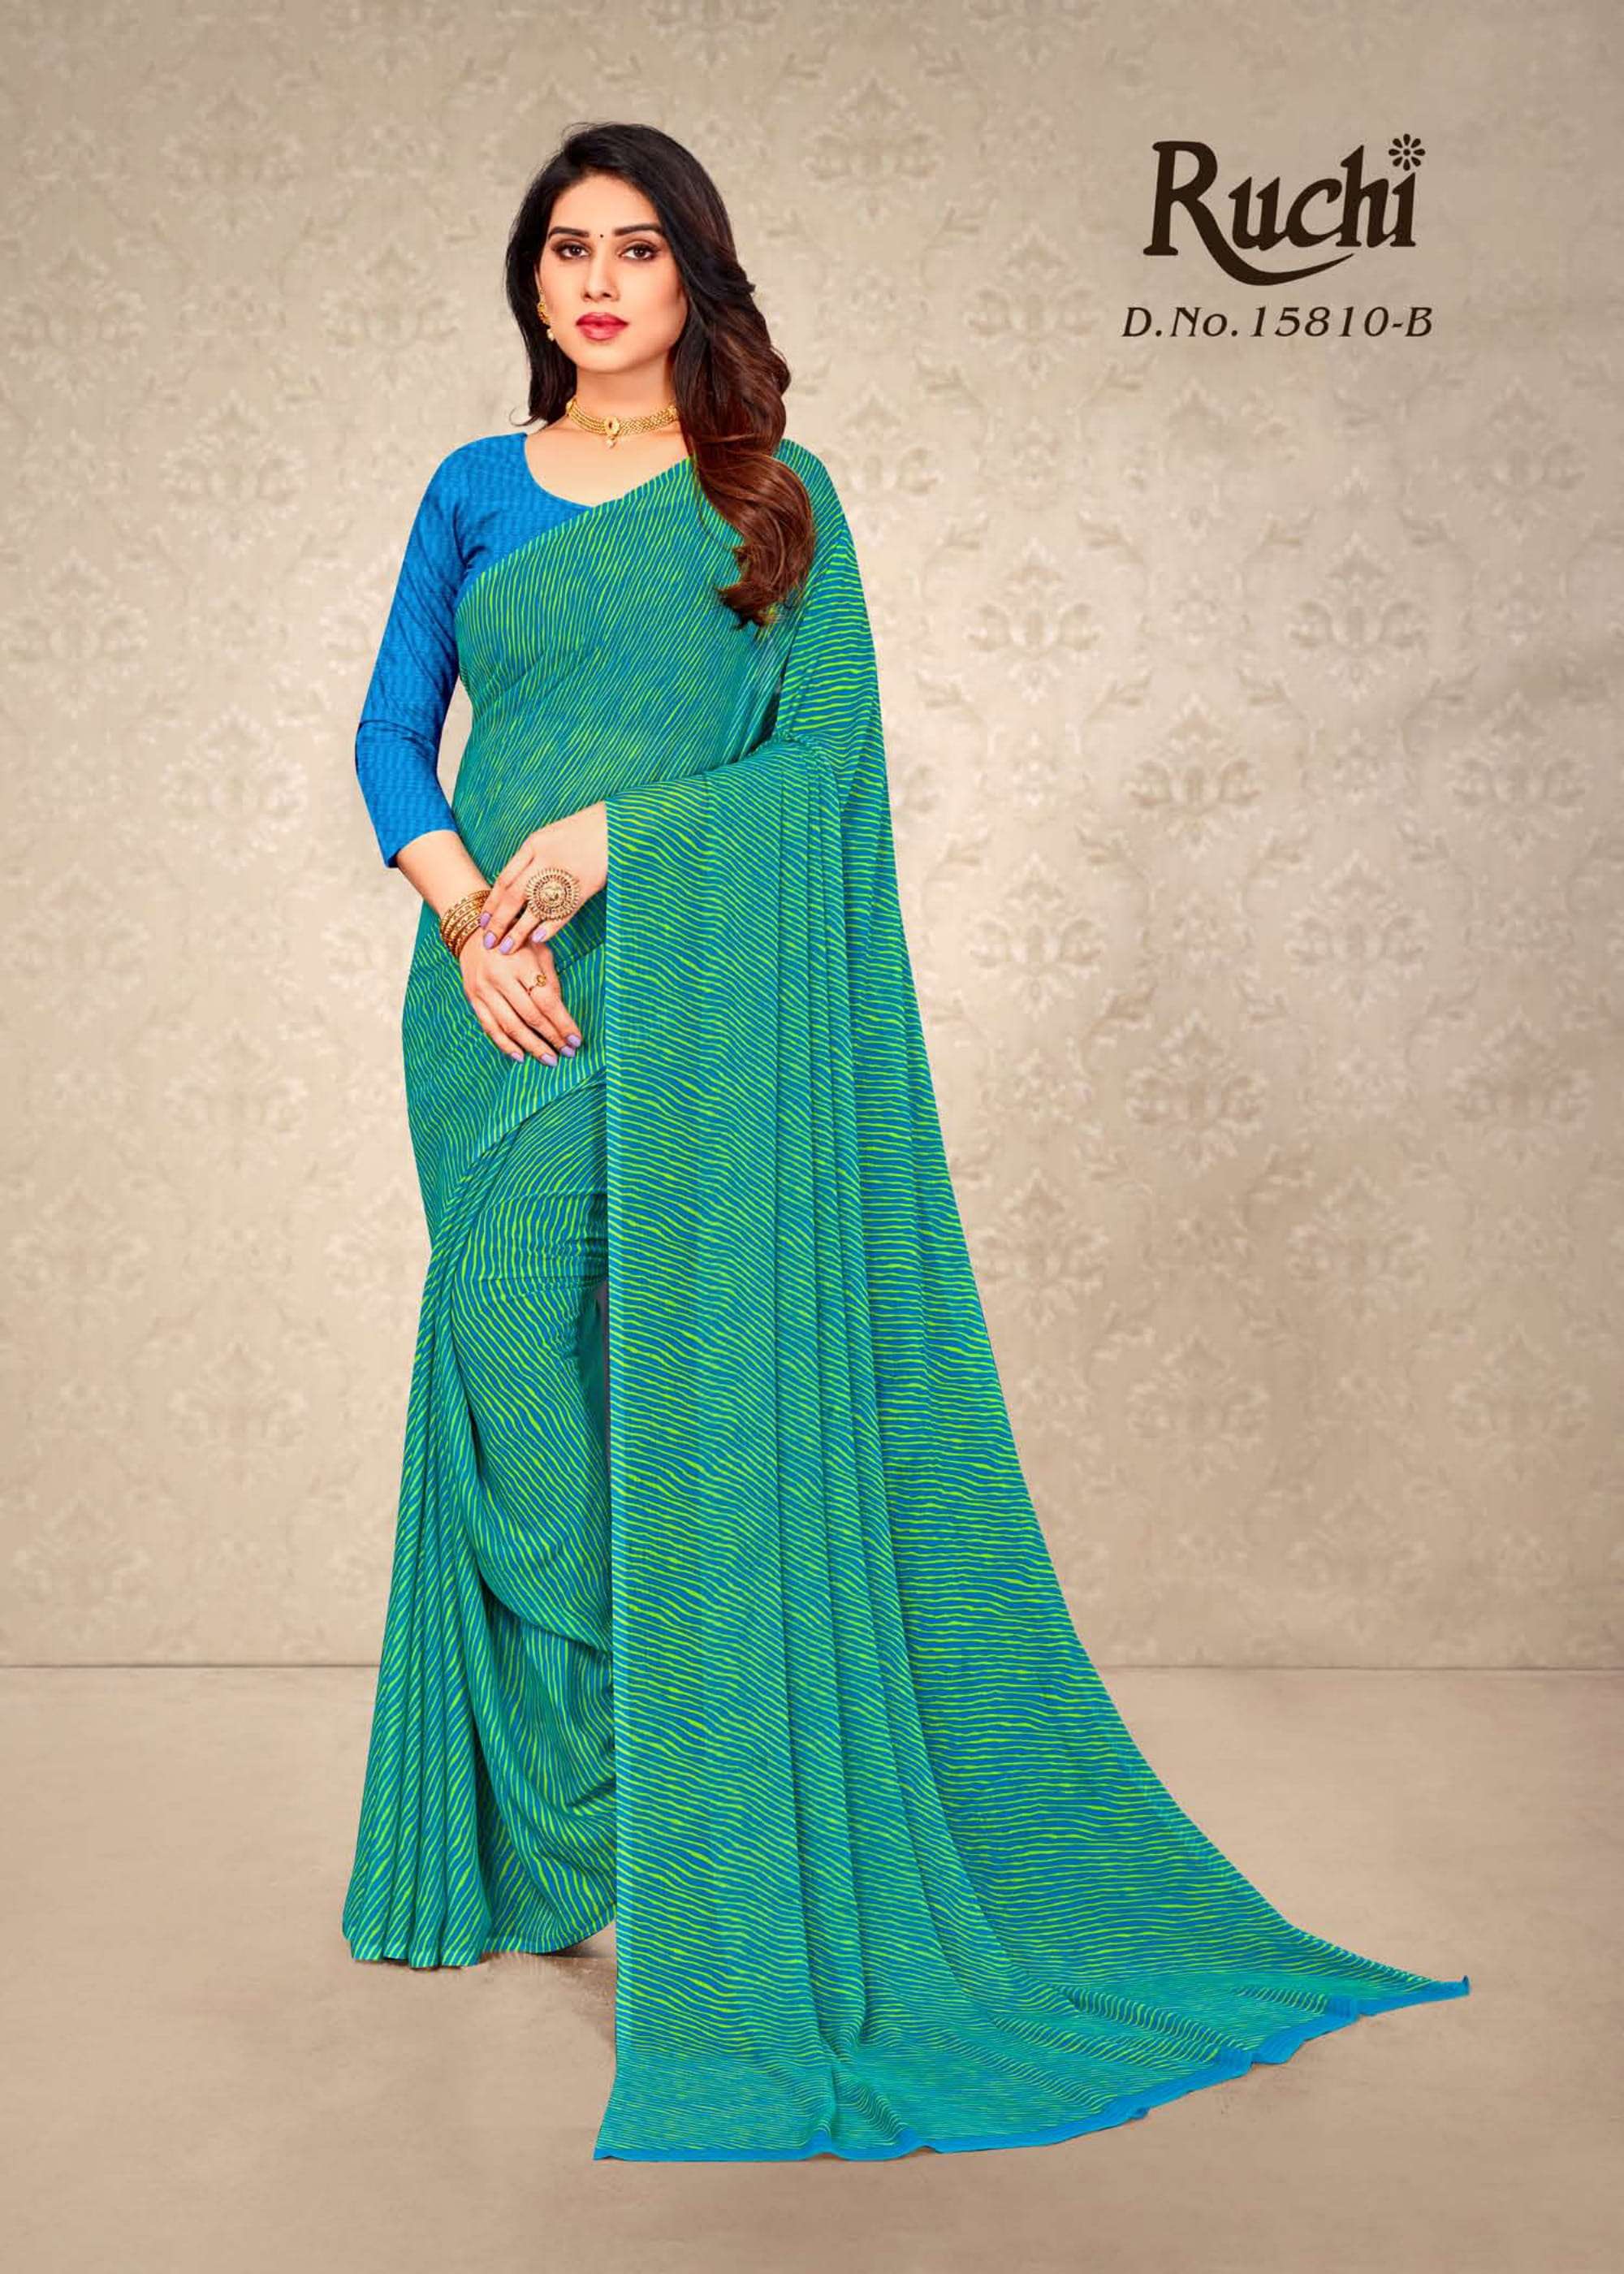 ruchi 15810 star chiffon printed lehriya special fancy sarees